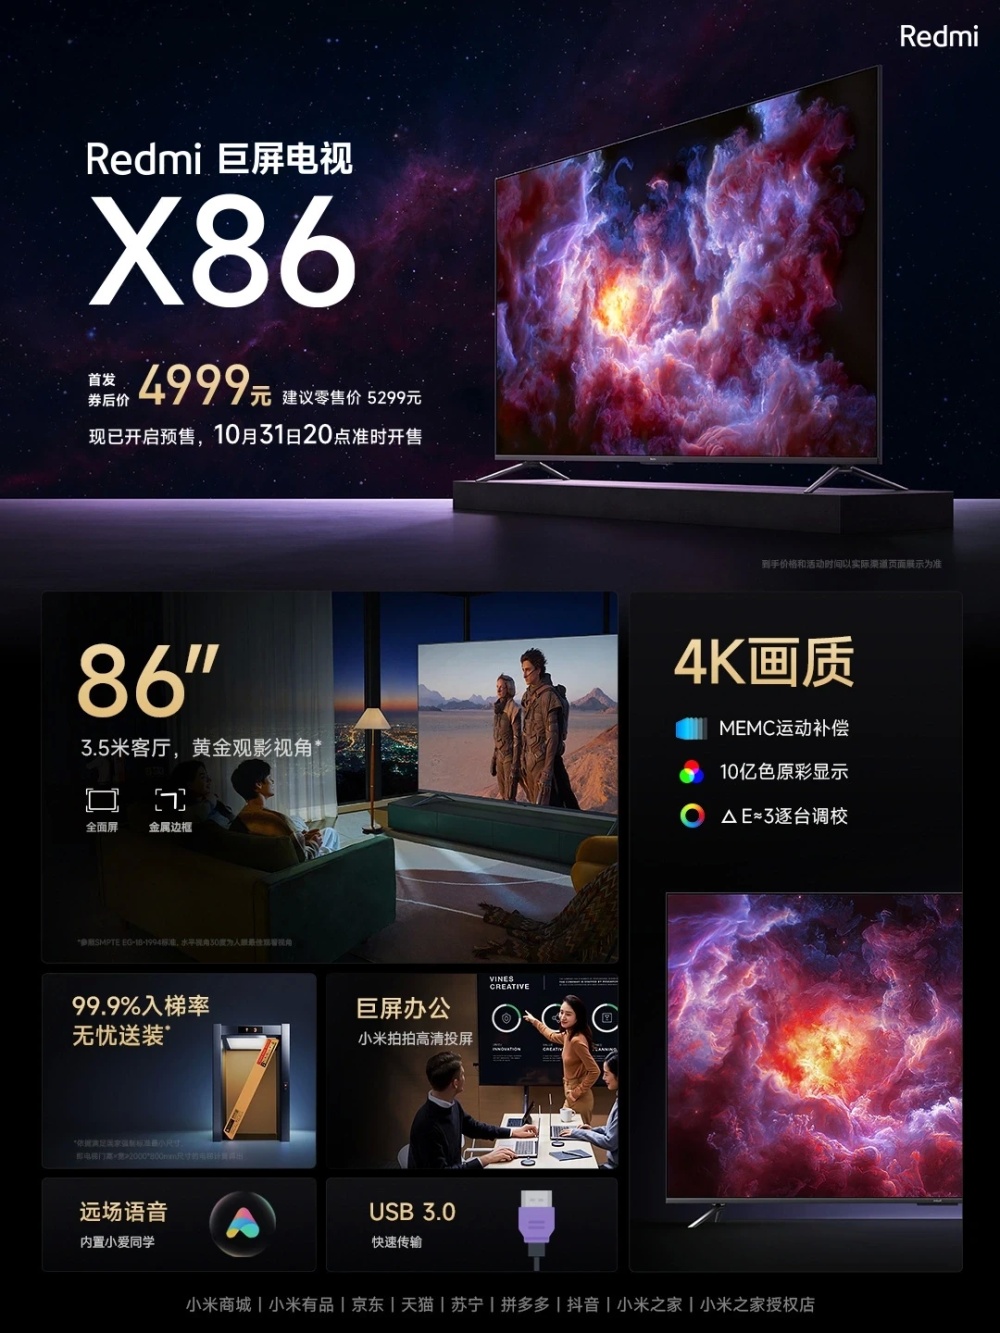 Xiaomi выпустила огромный 4K-телевизор Redmi X86